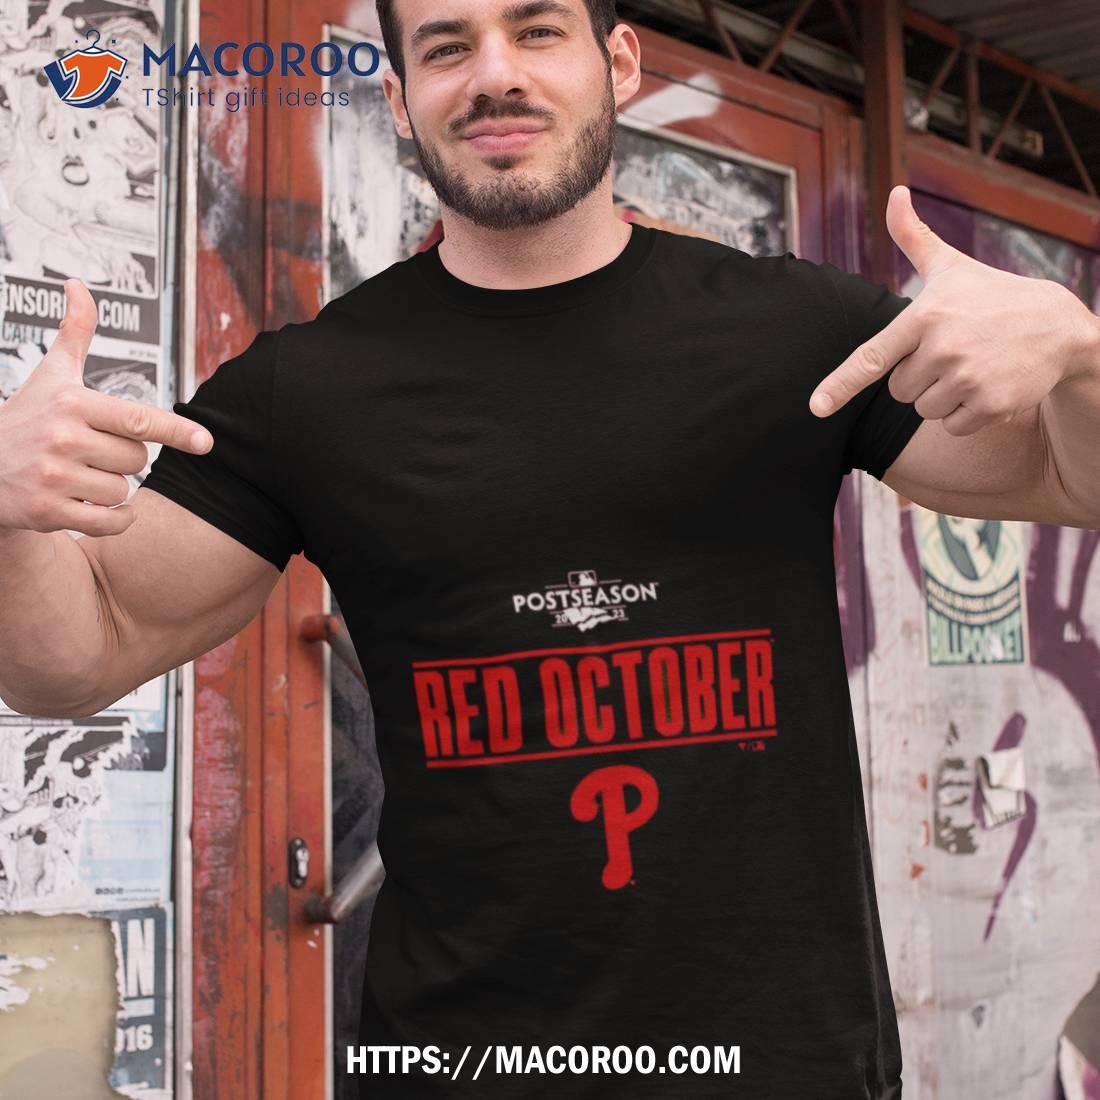 Take October Phillies Shirt, Philadelphia Red October Baseball